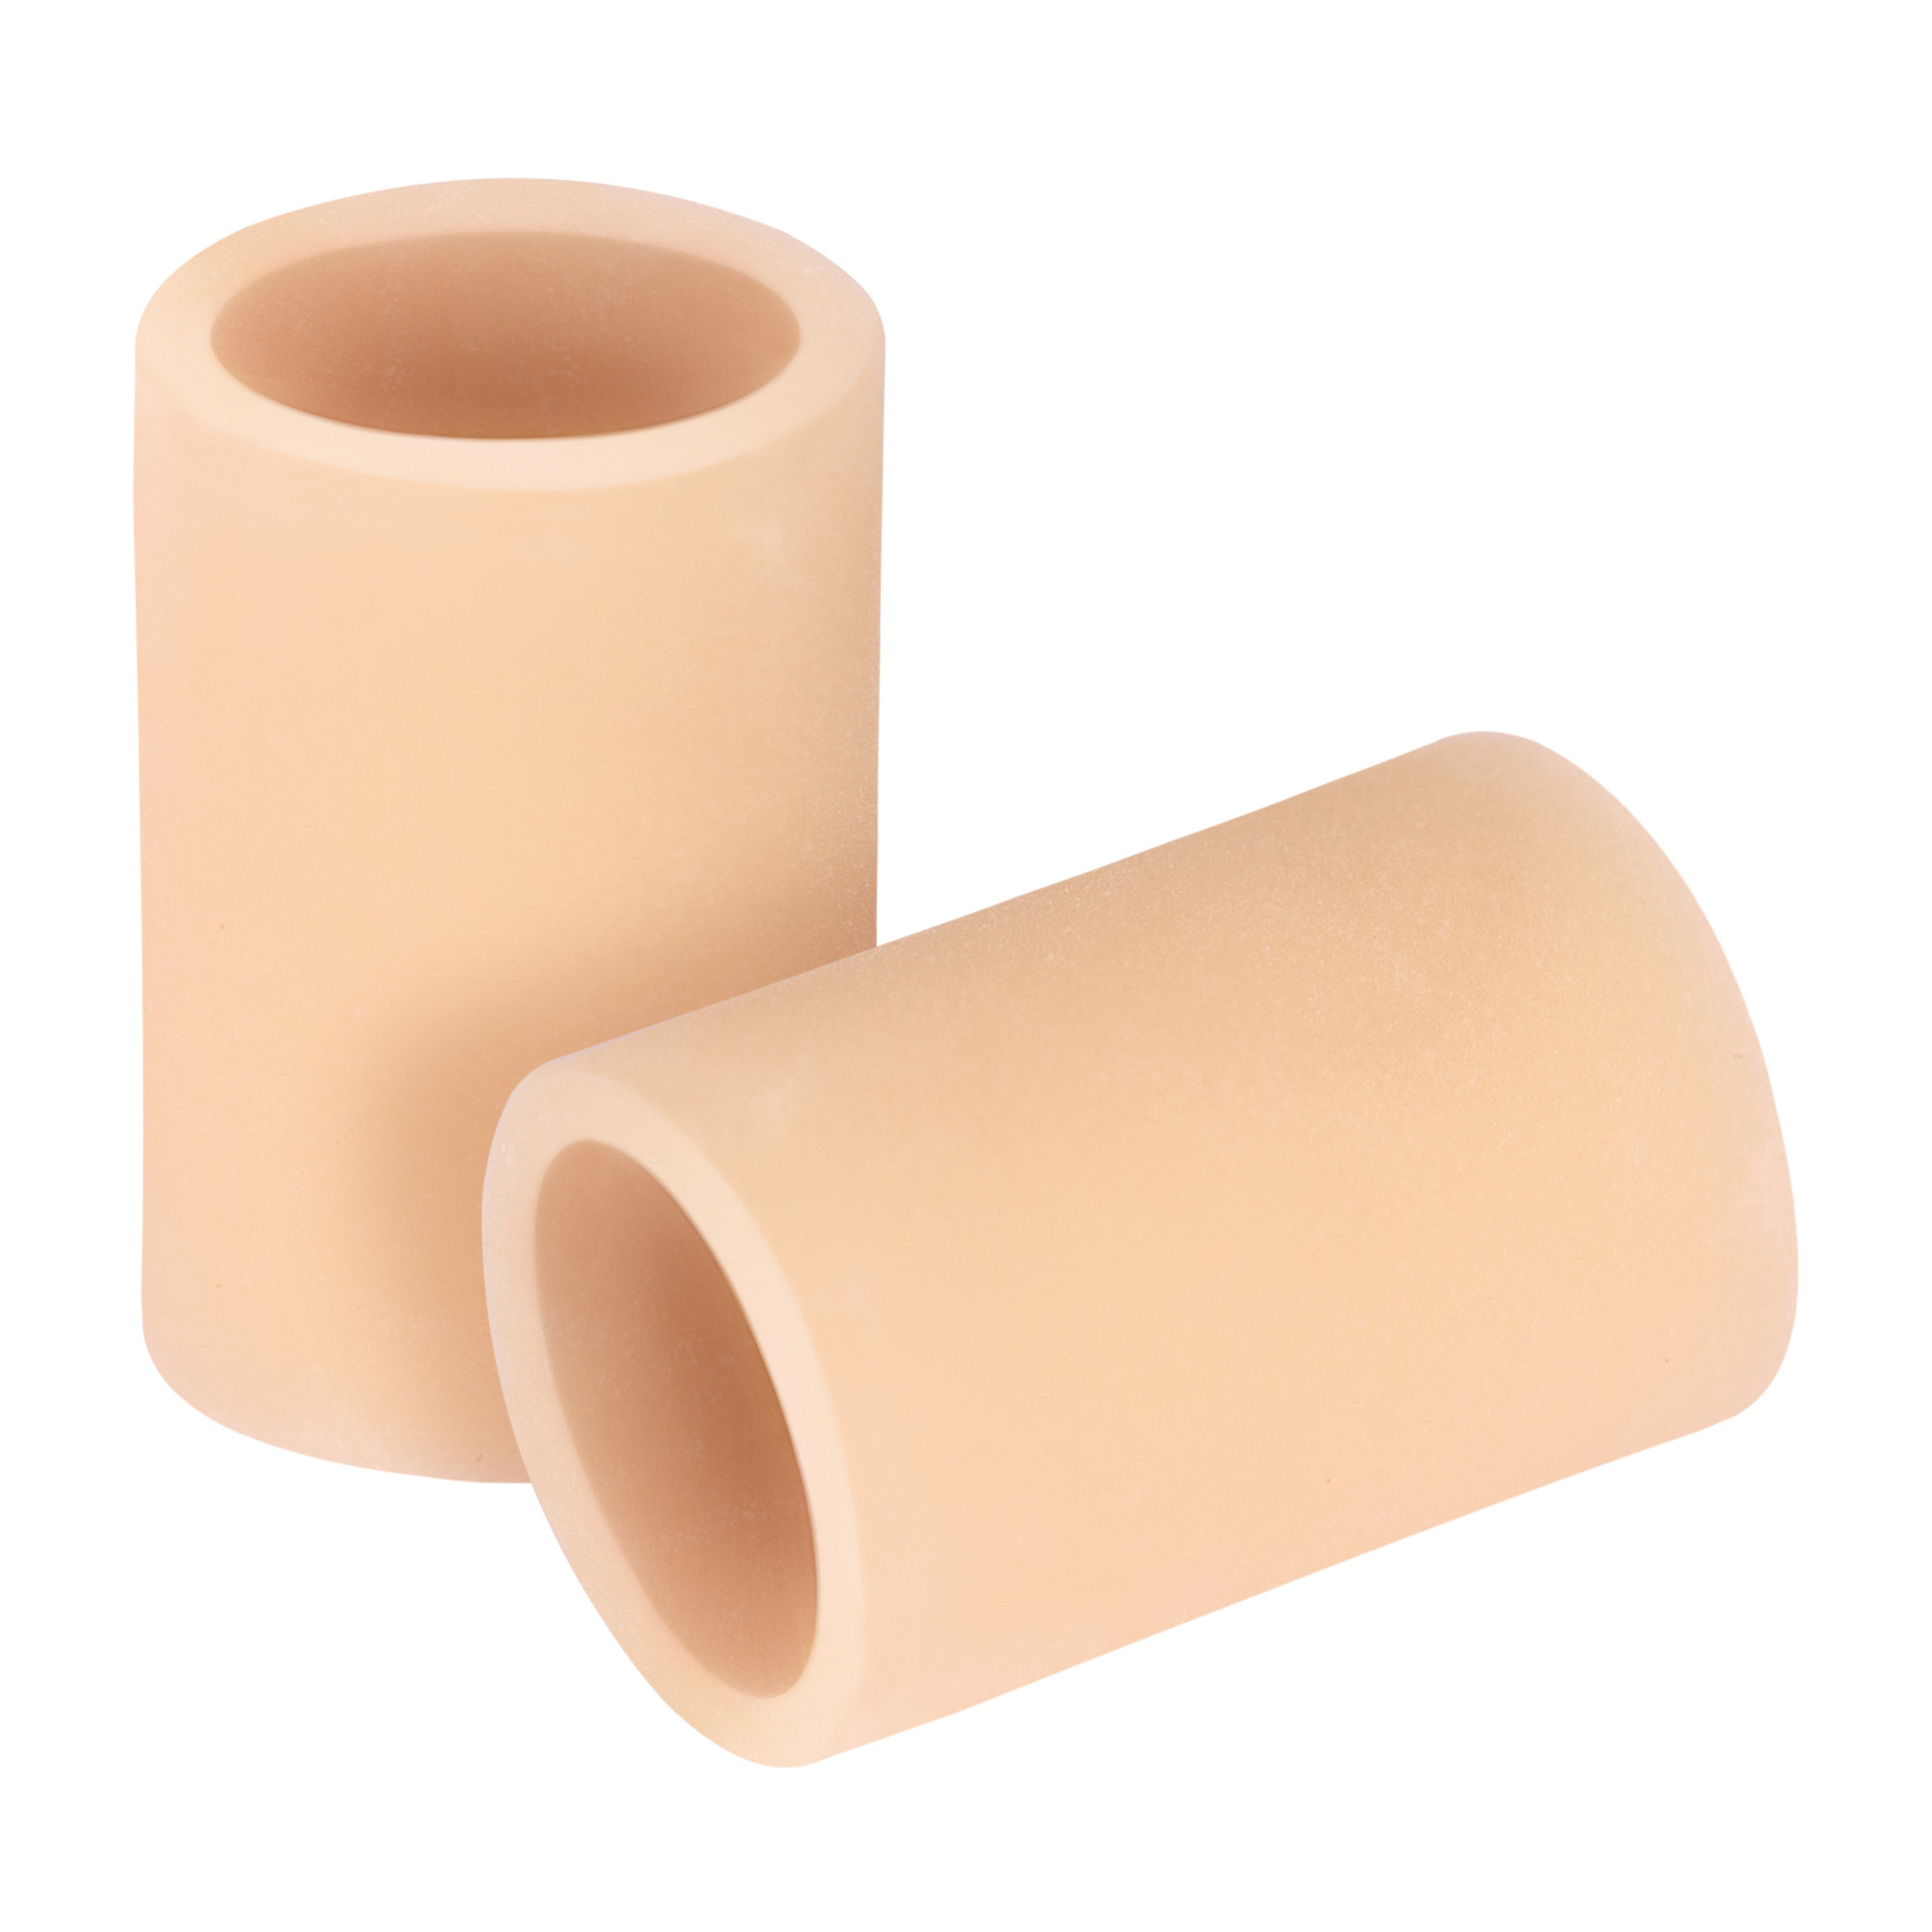 Protections pour orteils en Tecniwork Polymer Gel en couleur chair, kit de 52 pièces